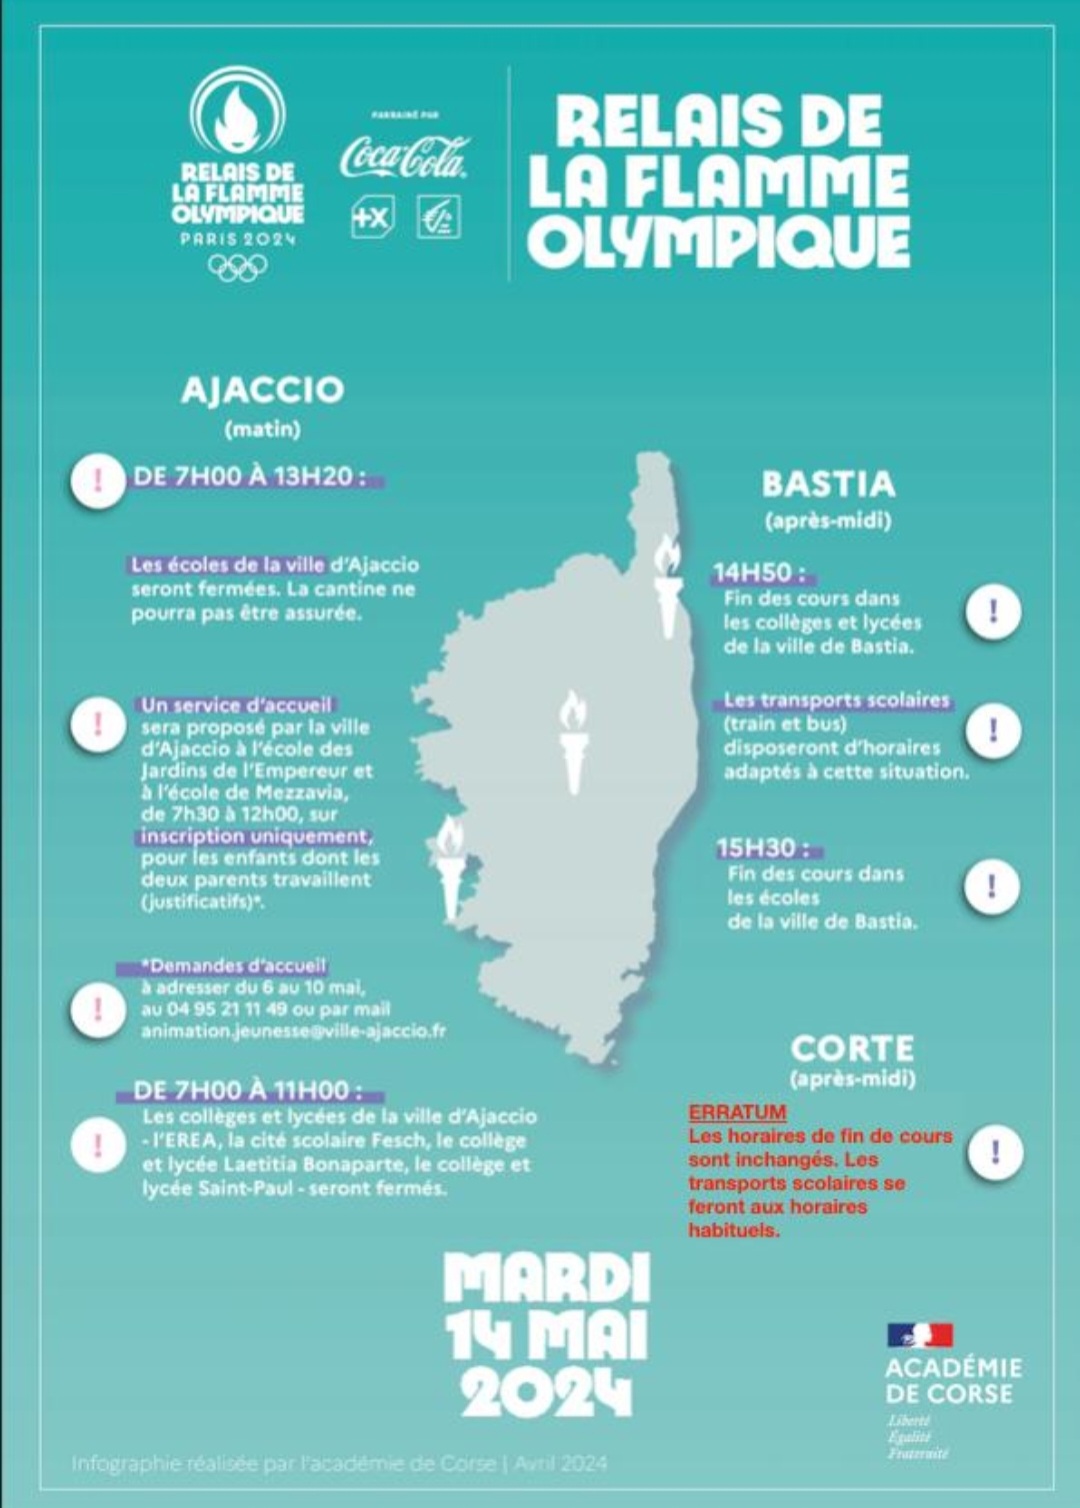 Infographie - Relais de la flamme olympique le 14 mai 2024